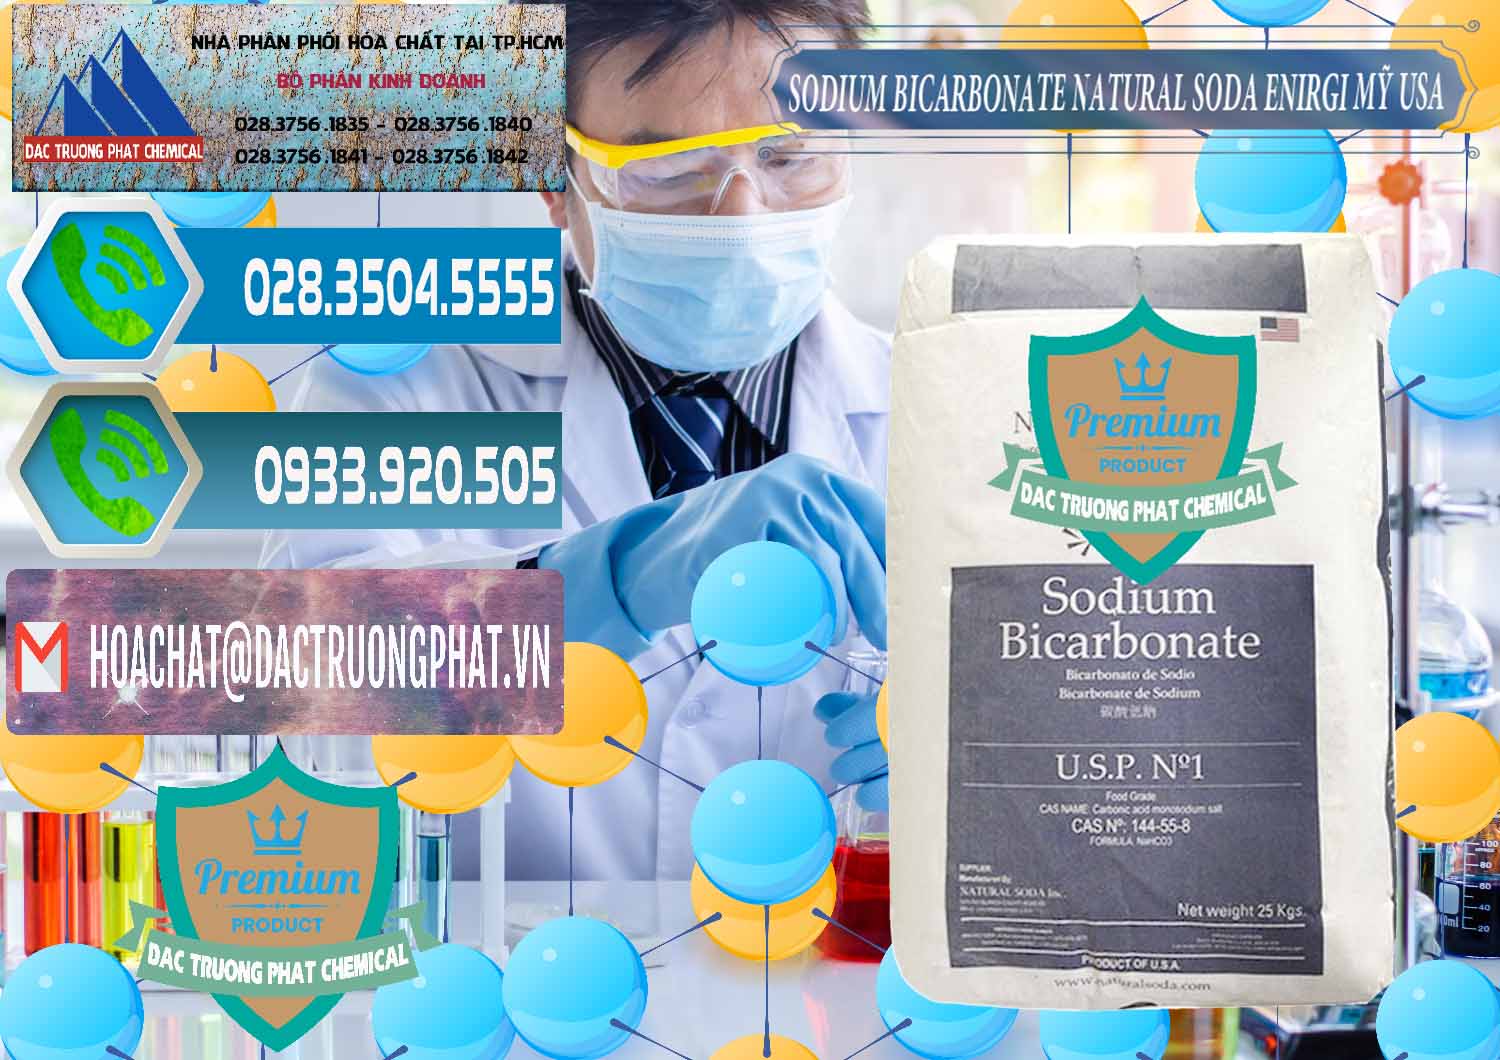 Công ty phân phối _ bán Sodium Bicarbonate – Bicar NaHCO3 Food Grade Natural Soda Enirgi Mỹ USA - 0257 - Nơi bán - cung cấp hóa chất tại TP.HCM - congtyhoachat.net